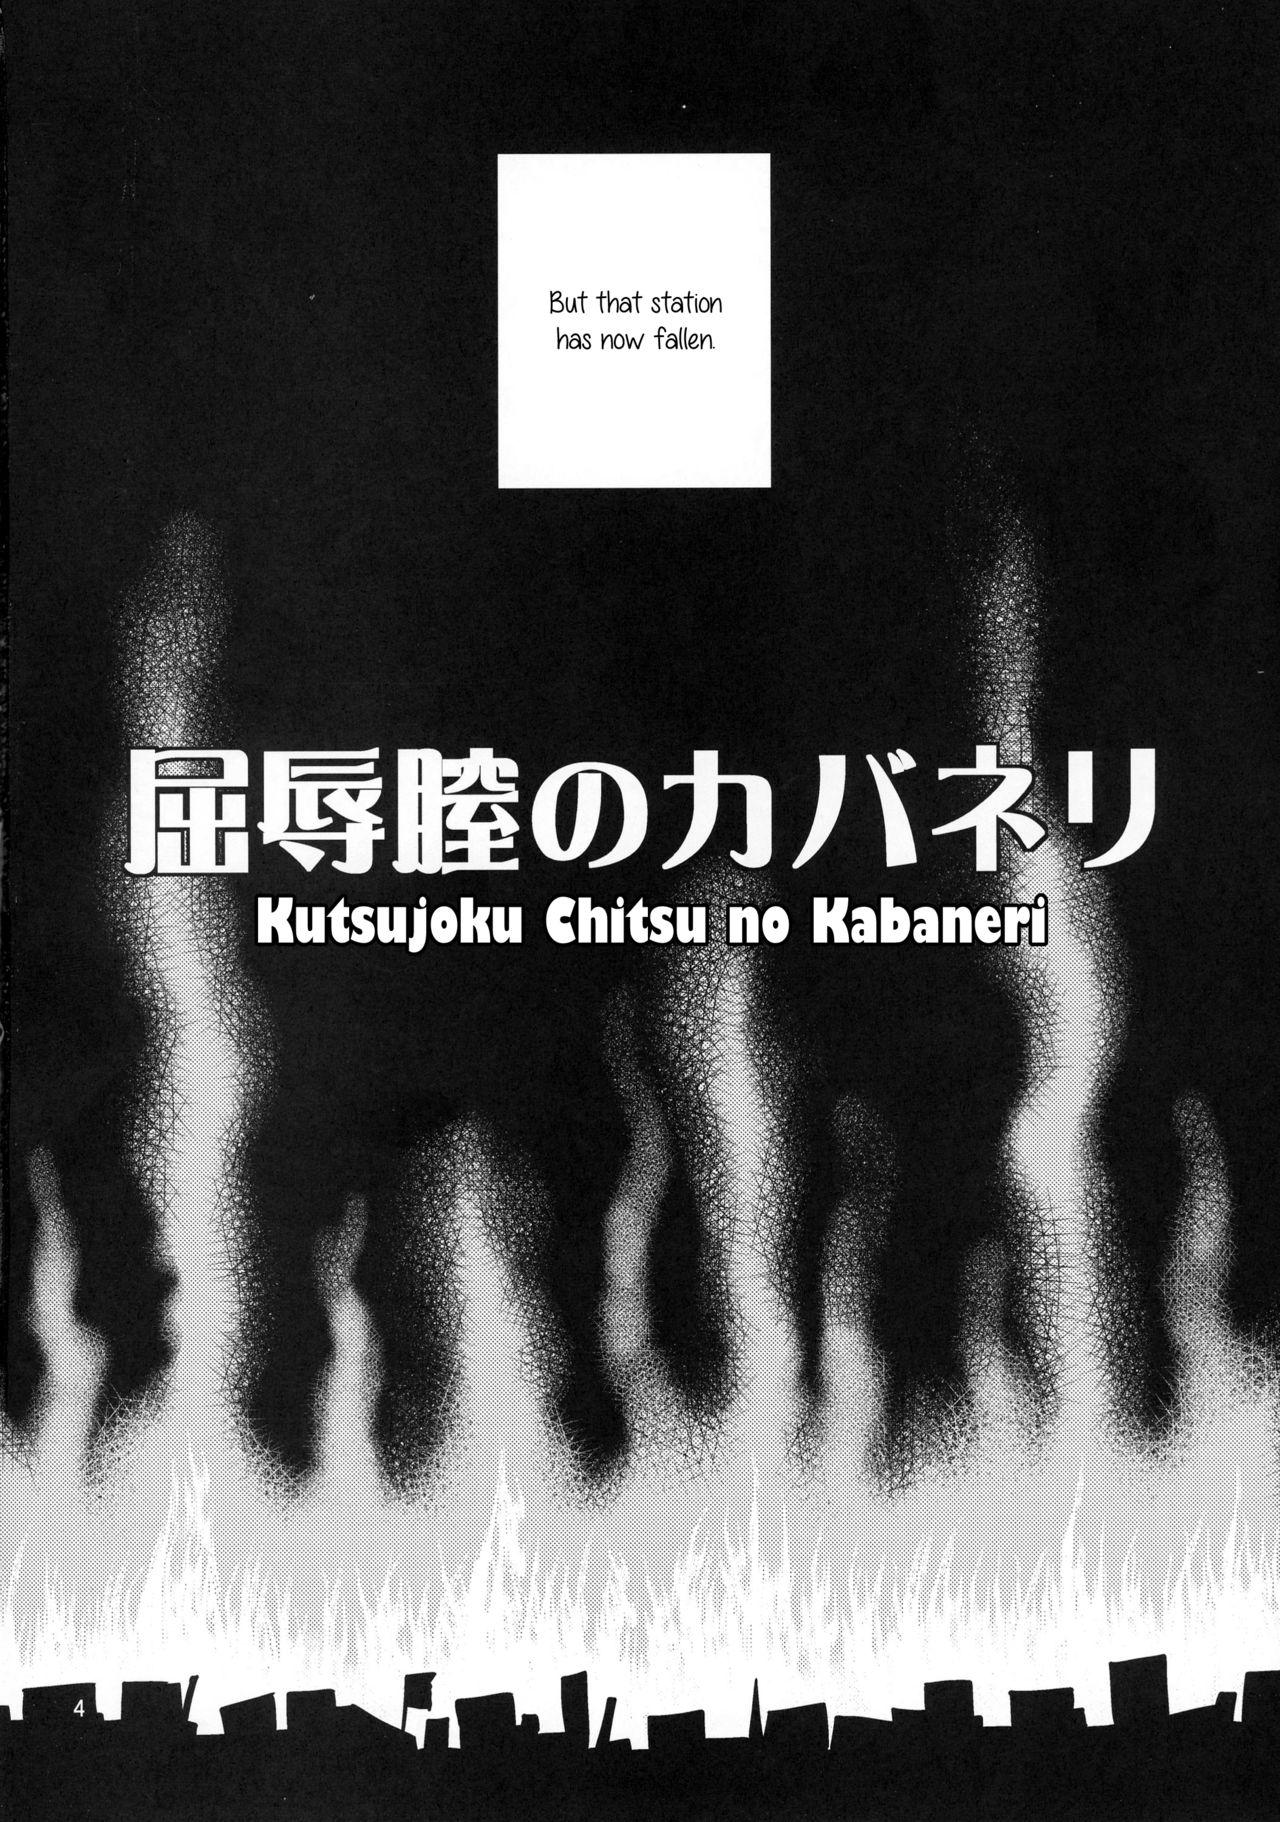 Pawg Kutsujoku Chitsu no Kabaneri - Koutetsujou no kabaneri Workout - Page 4